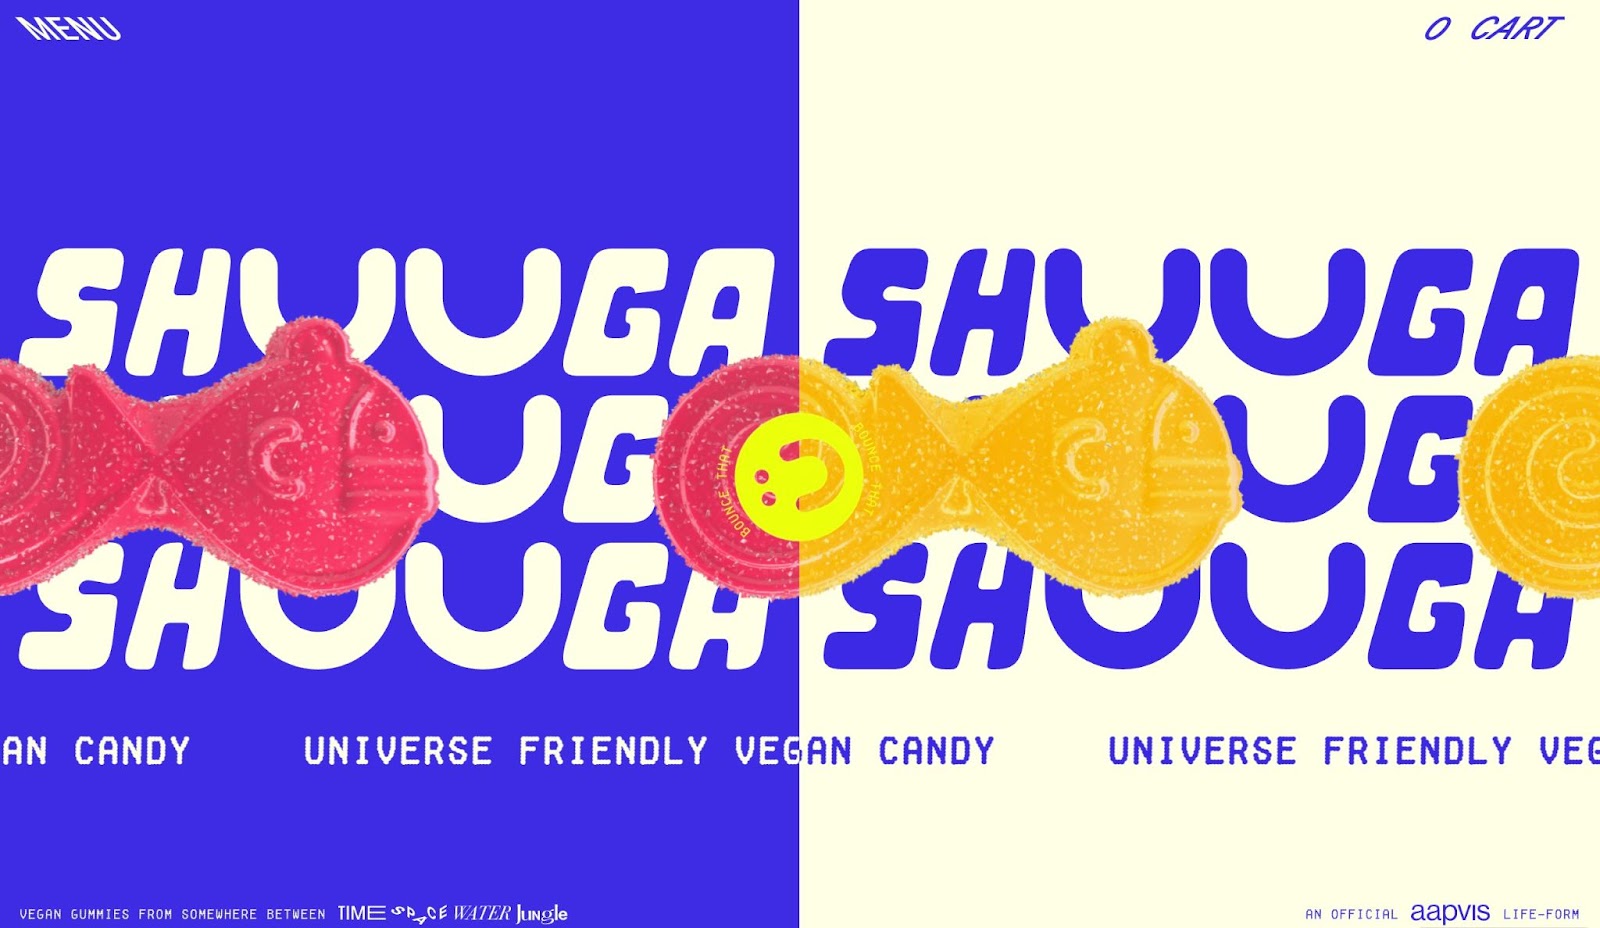 Antetul site-ului lui Shuga, împărțit vertical în jumătate. Partea stângă este albastră, cu text crem pe care scrie SHUGA. Partea dreaptă este identică cu un fundal crem și text albastru. Pe fundal sunt redări ping și portocalii ale bomboanelor lor vegane, în formă de pește.